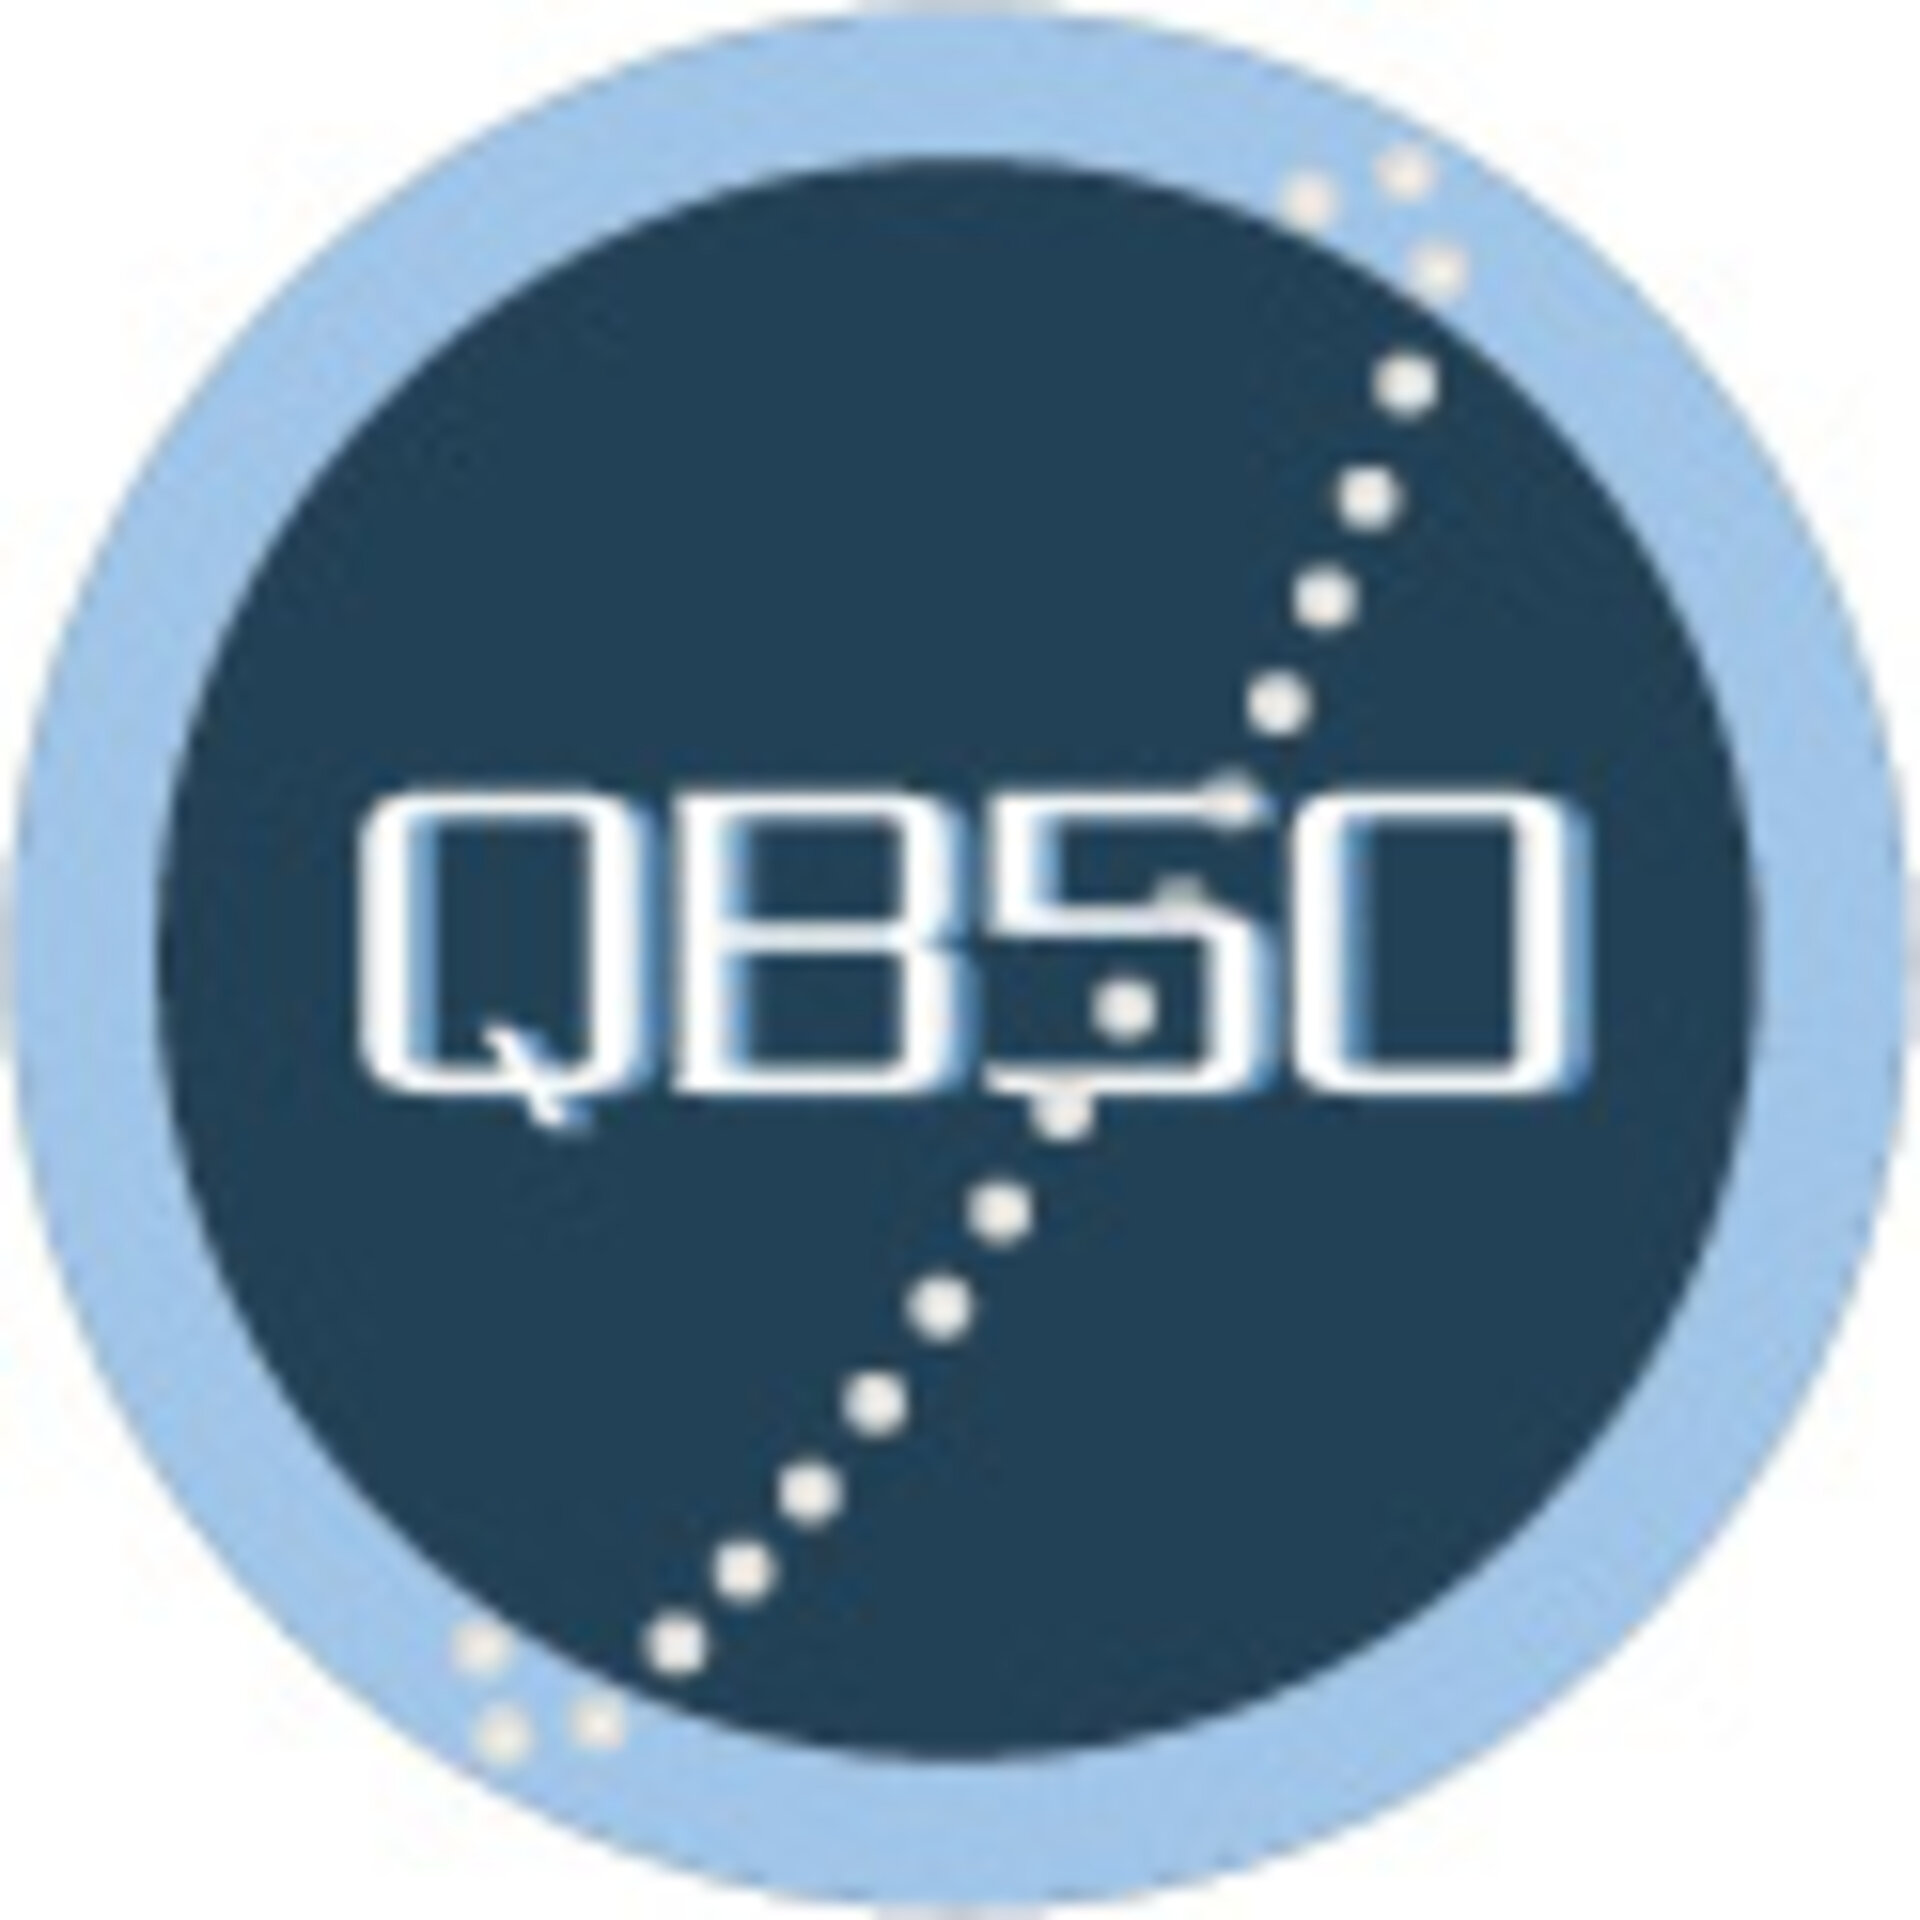 QB50 logo